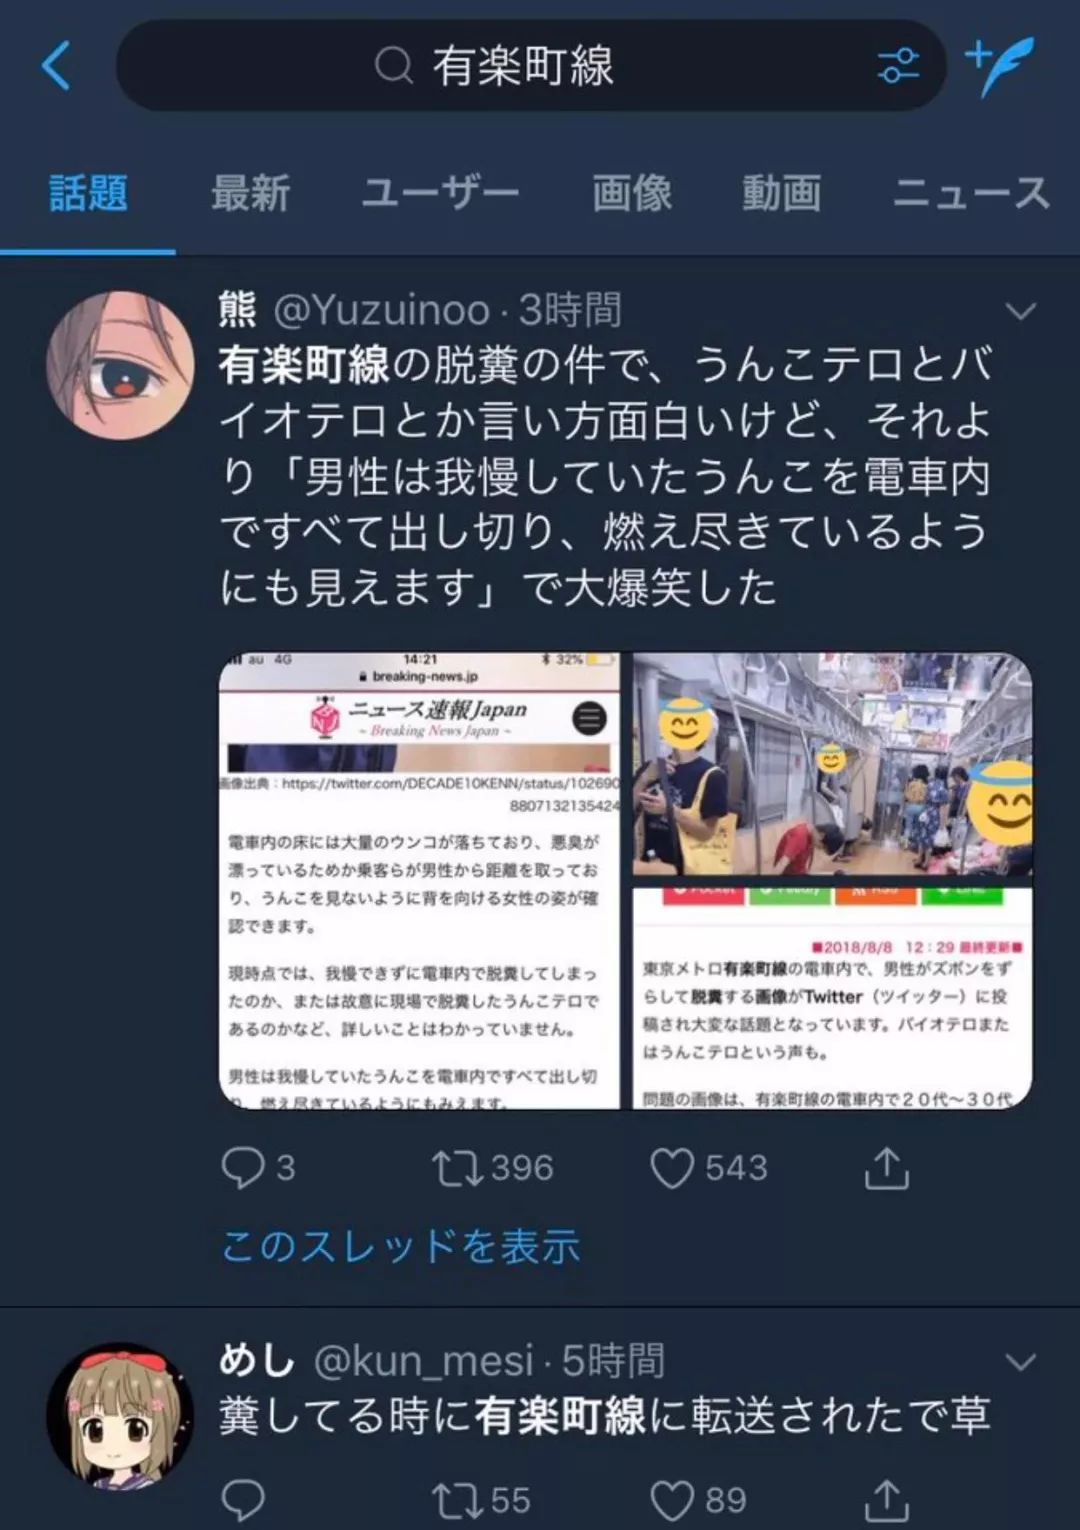 日本电车遭遇粪便恐怖袭击 停运了 小春 微信公众号文章阅读 Wemp